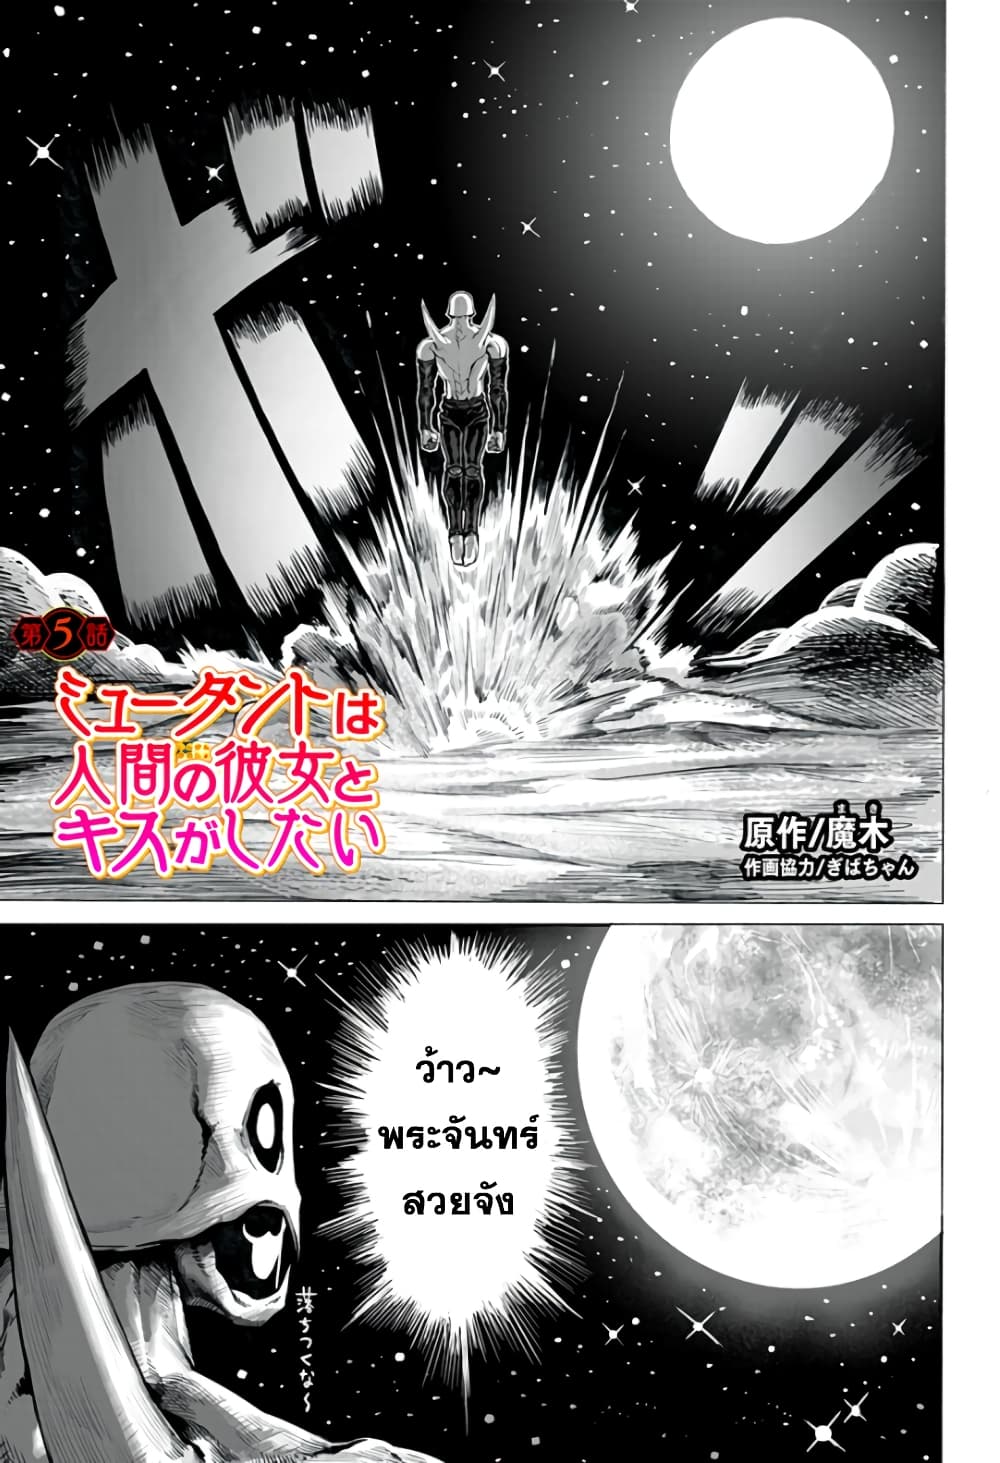 อ่านการ์ตูน Mutant wa ningen no kanojo to kisu ga shitai 5 ภาพที่ 1